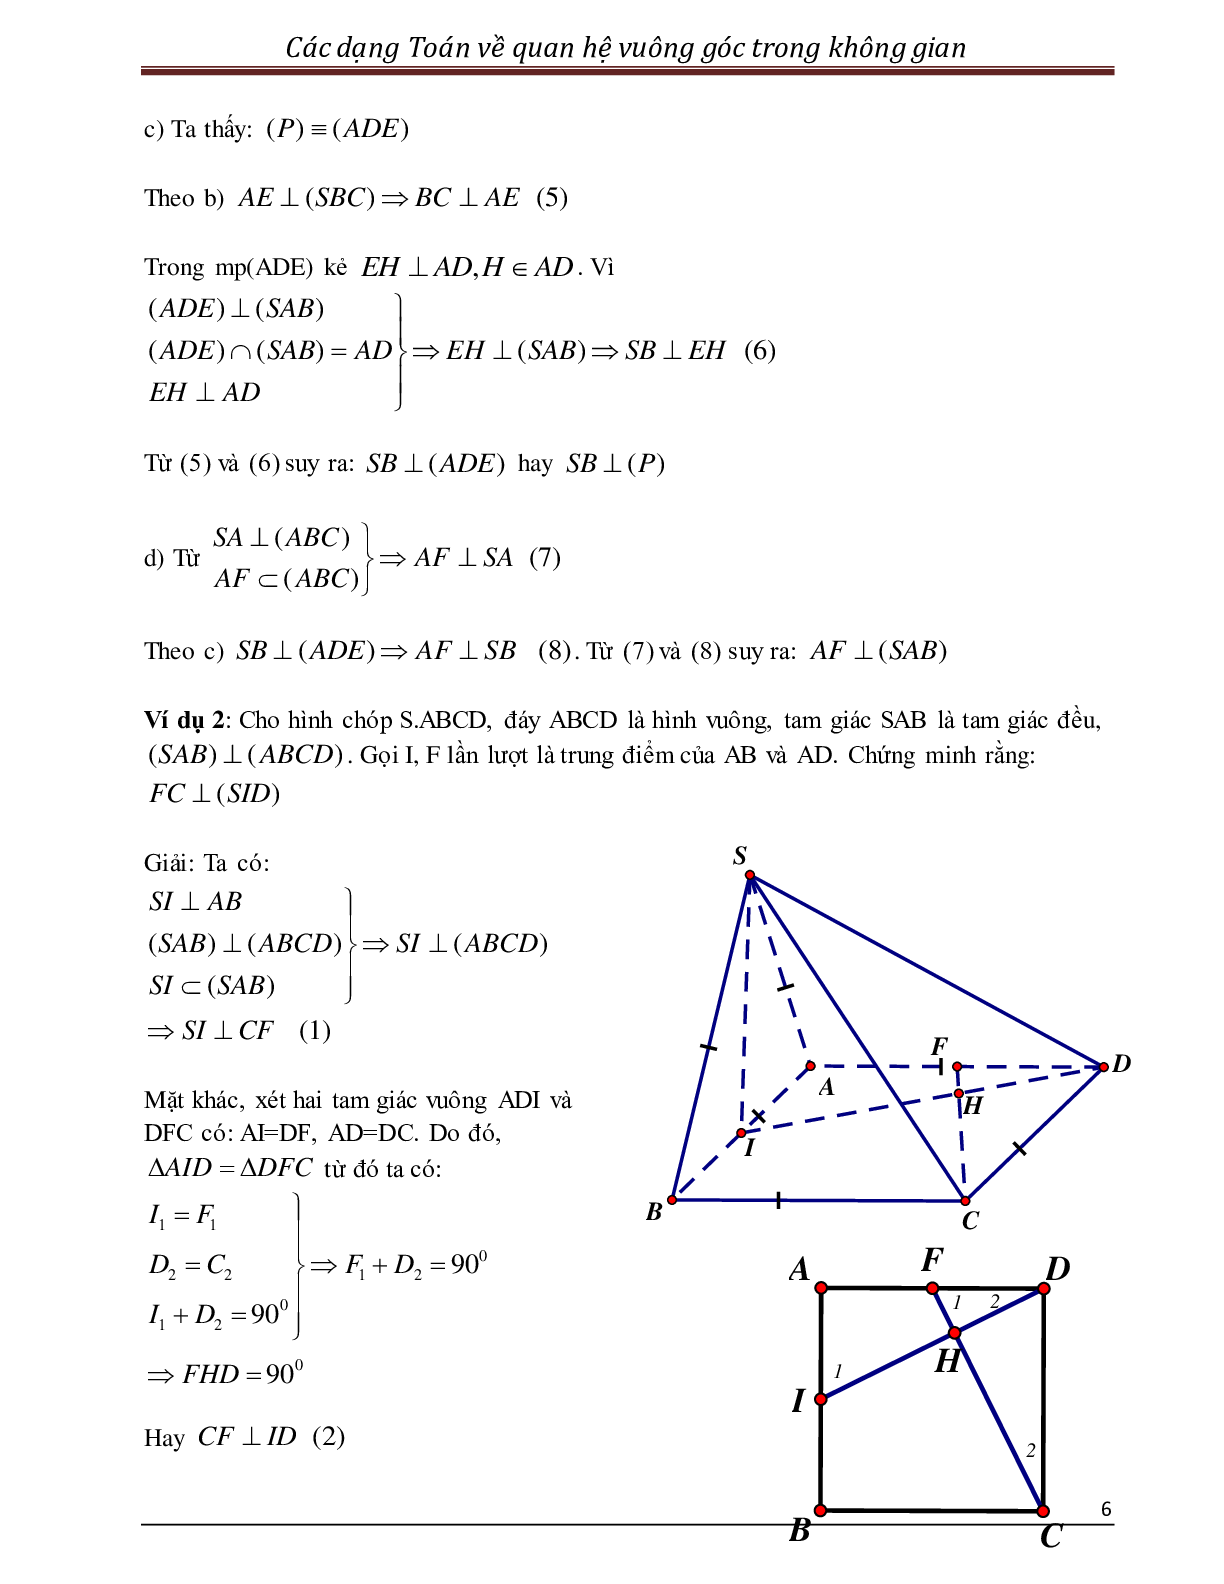 Các dạng toán quan hệ vuông góc trong không gian (trang 6)